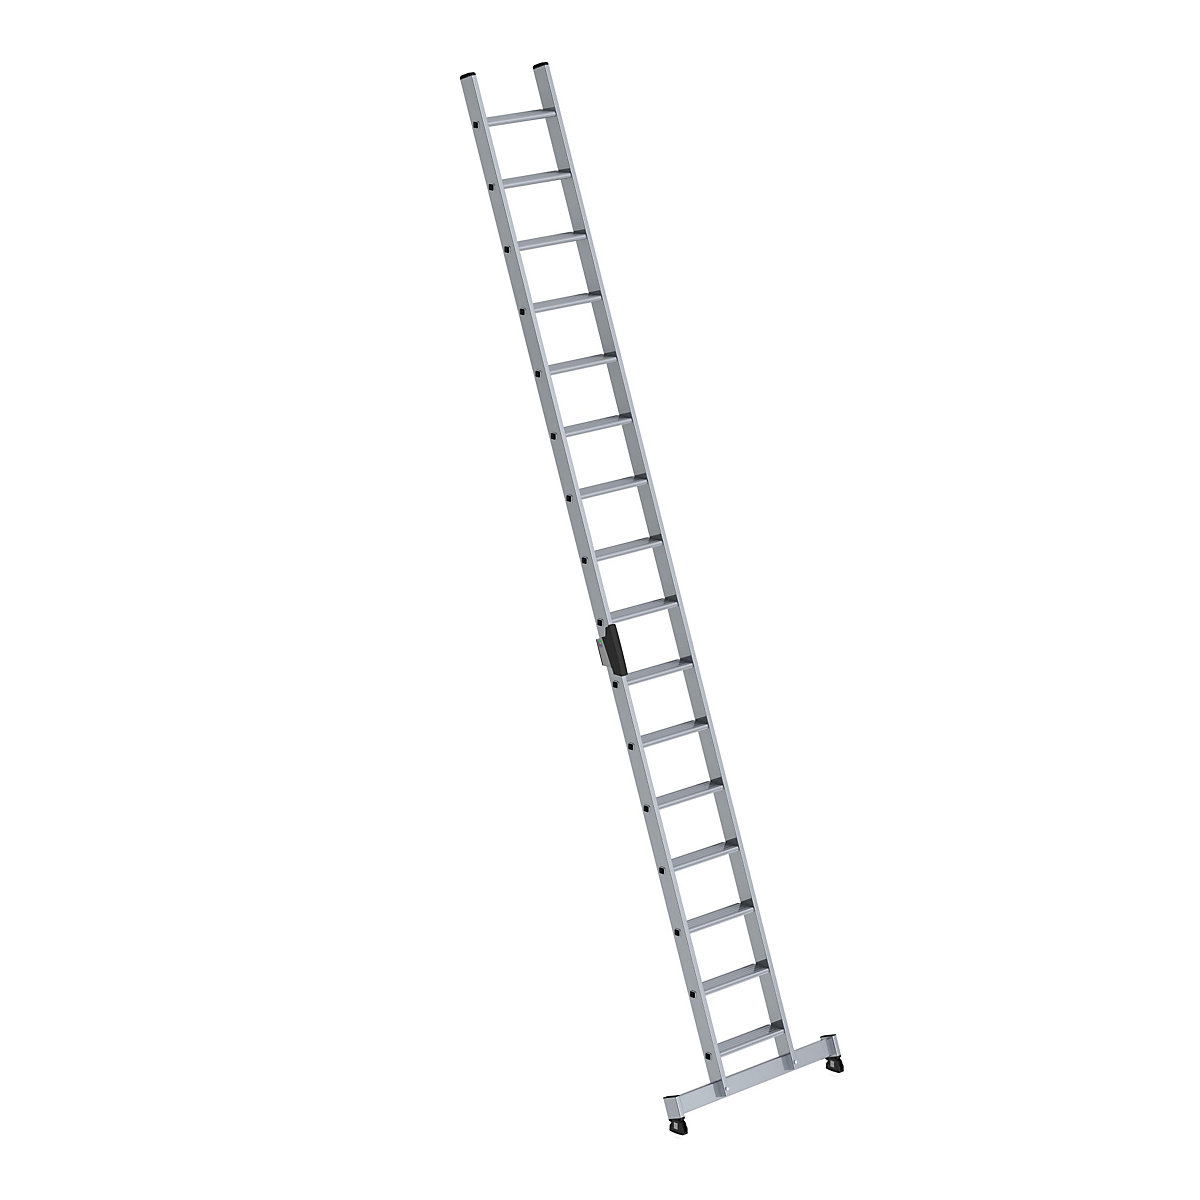 Escalera de mano con peldaños planos – MUNK, modelo profesional, anchura 420 mm, 16 peldaños, con traviesa nivello®-11